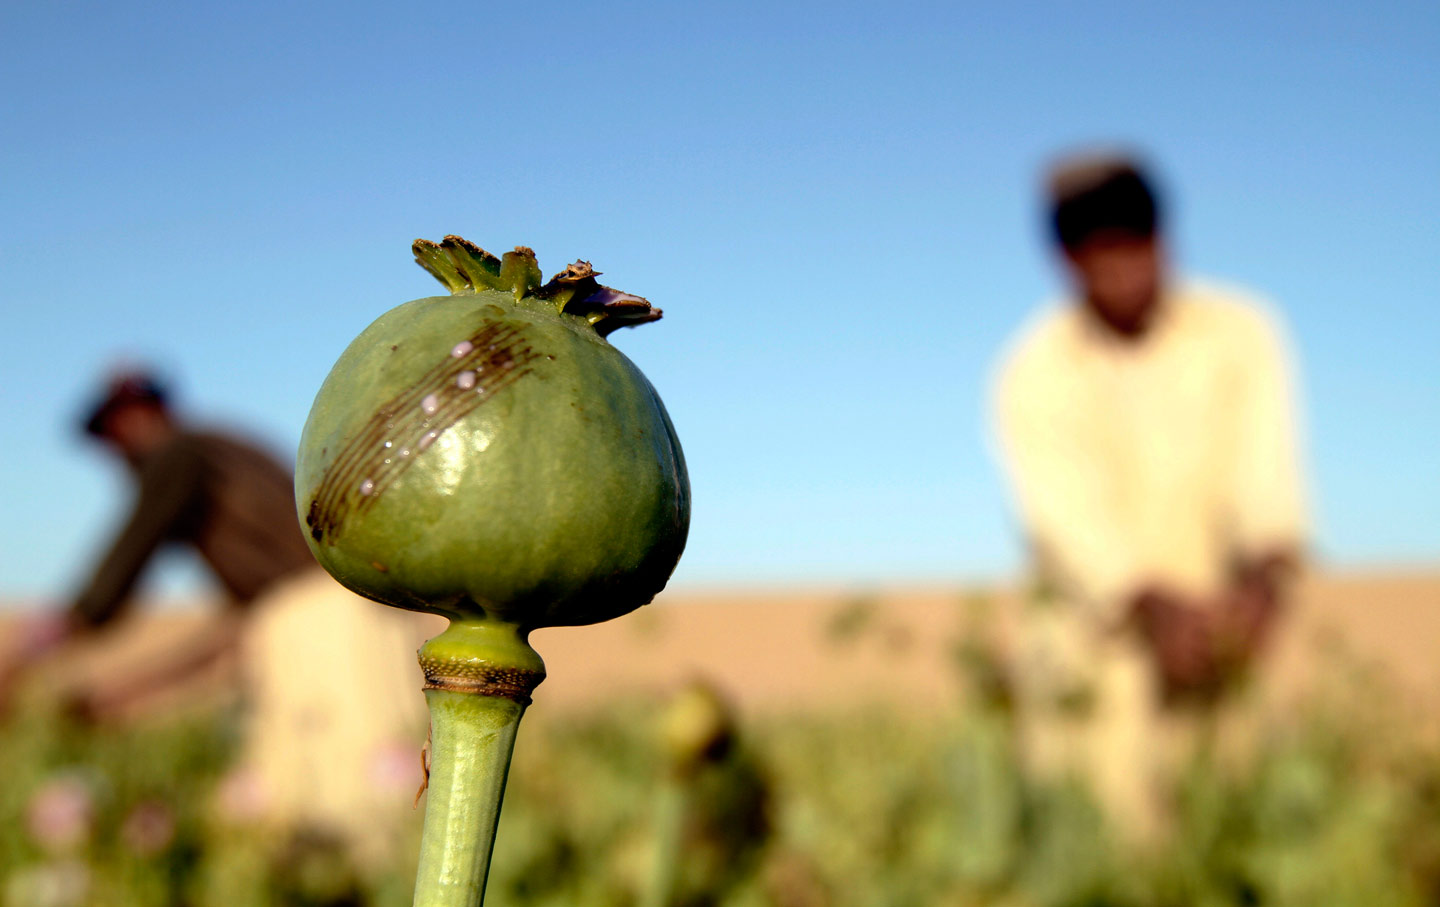 An opium field in Afghanistan